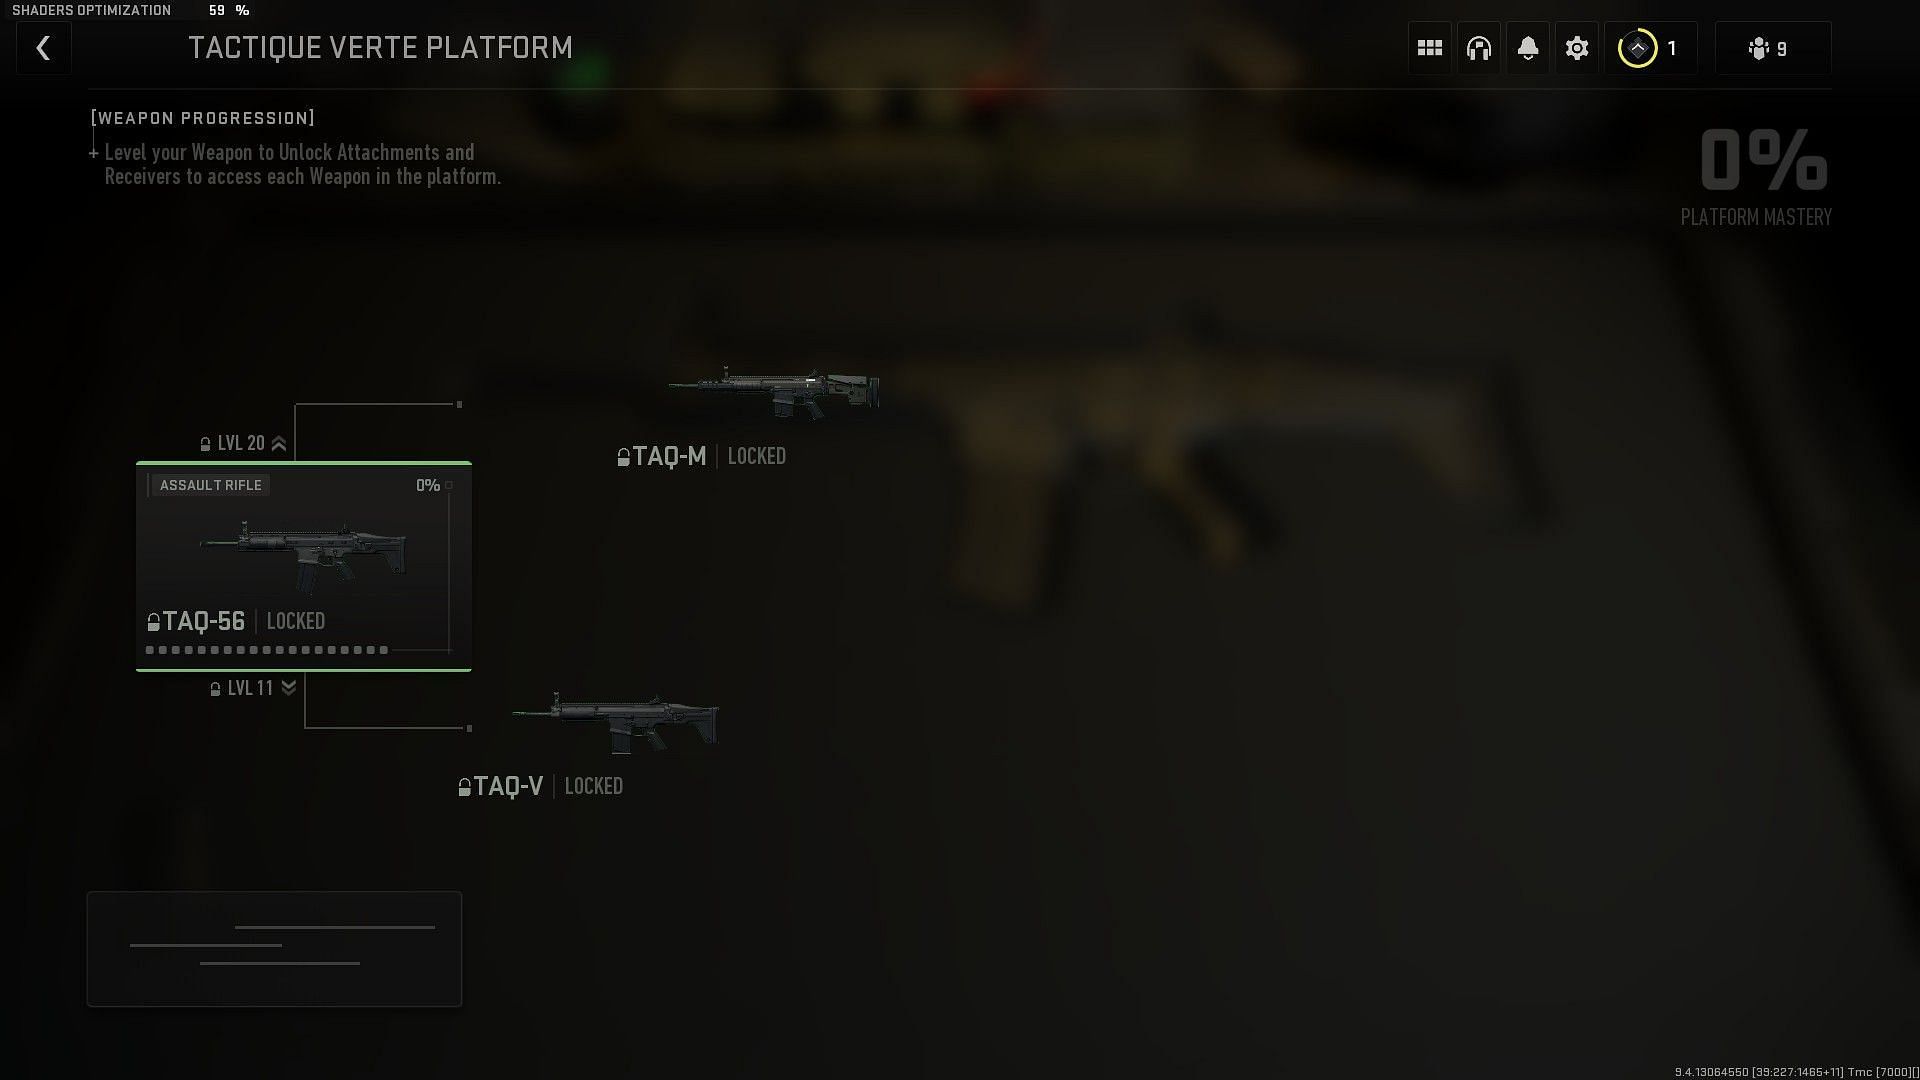 Tactique Verte weapon Platform (Image via Activision)